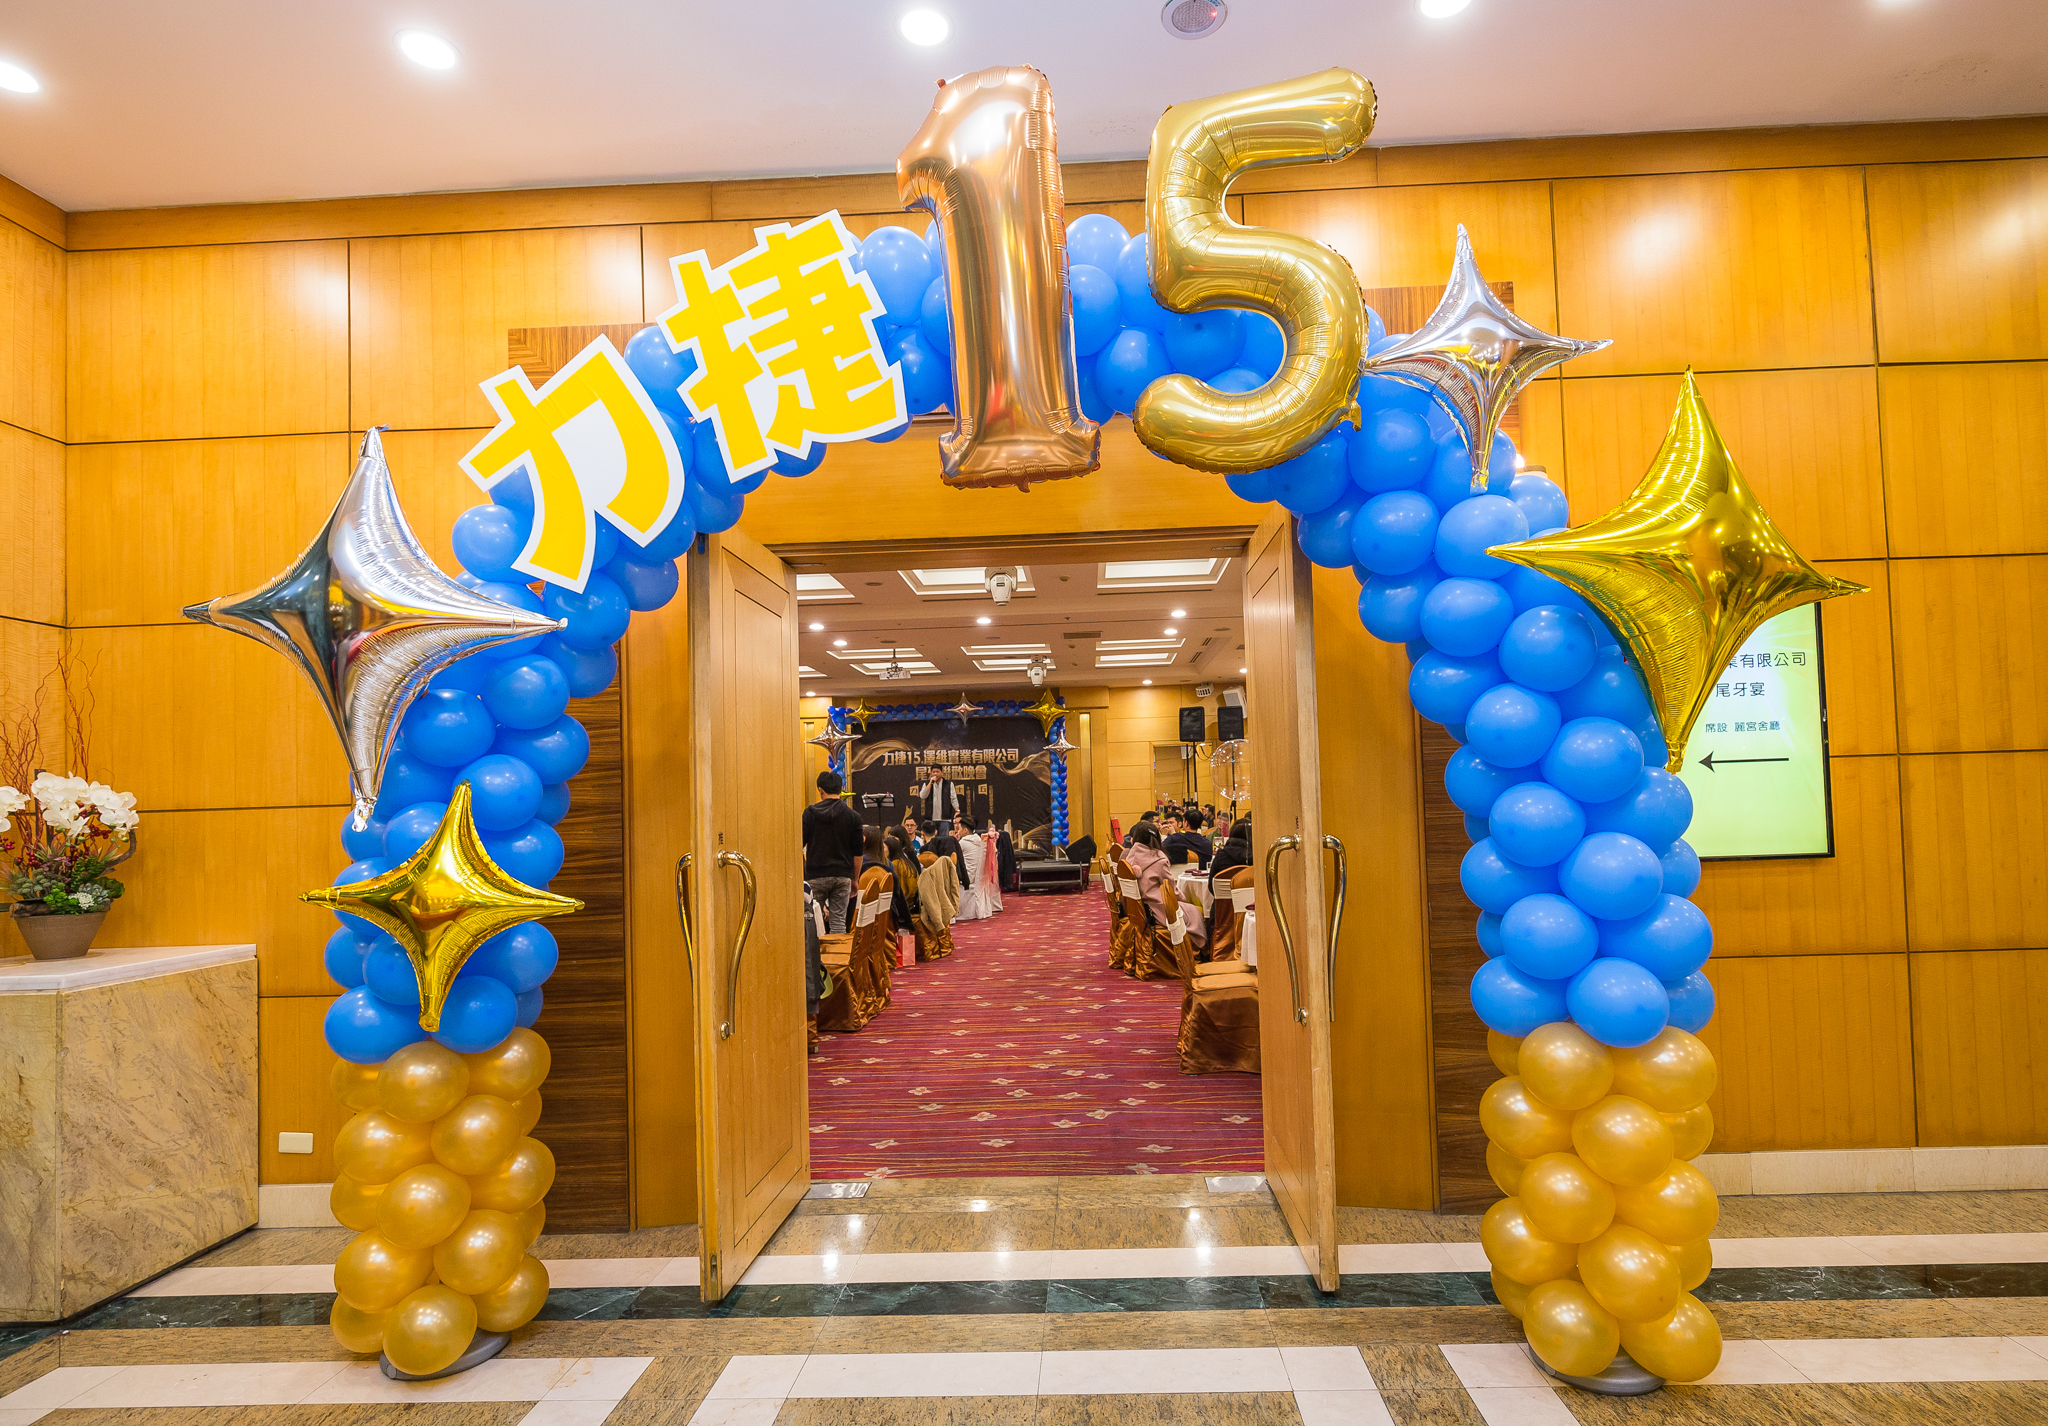 尾牙活動入口處，映入眼簾是金色與藍色氣球相搭配的氣球拱門，營造低調奢華感。